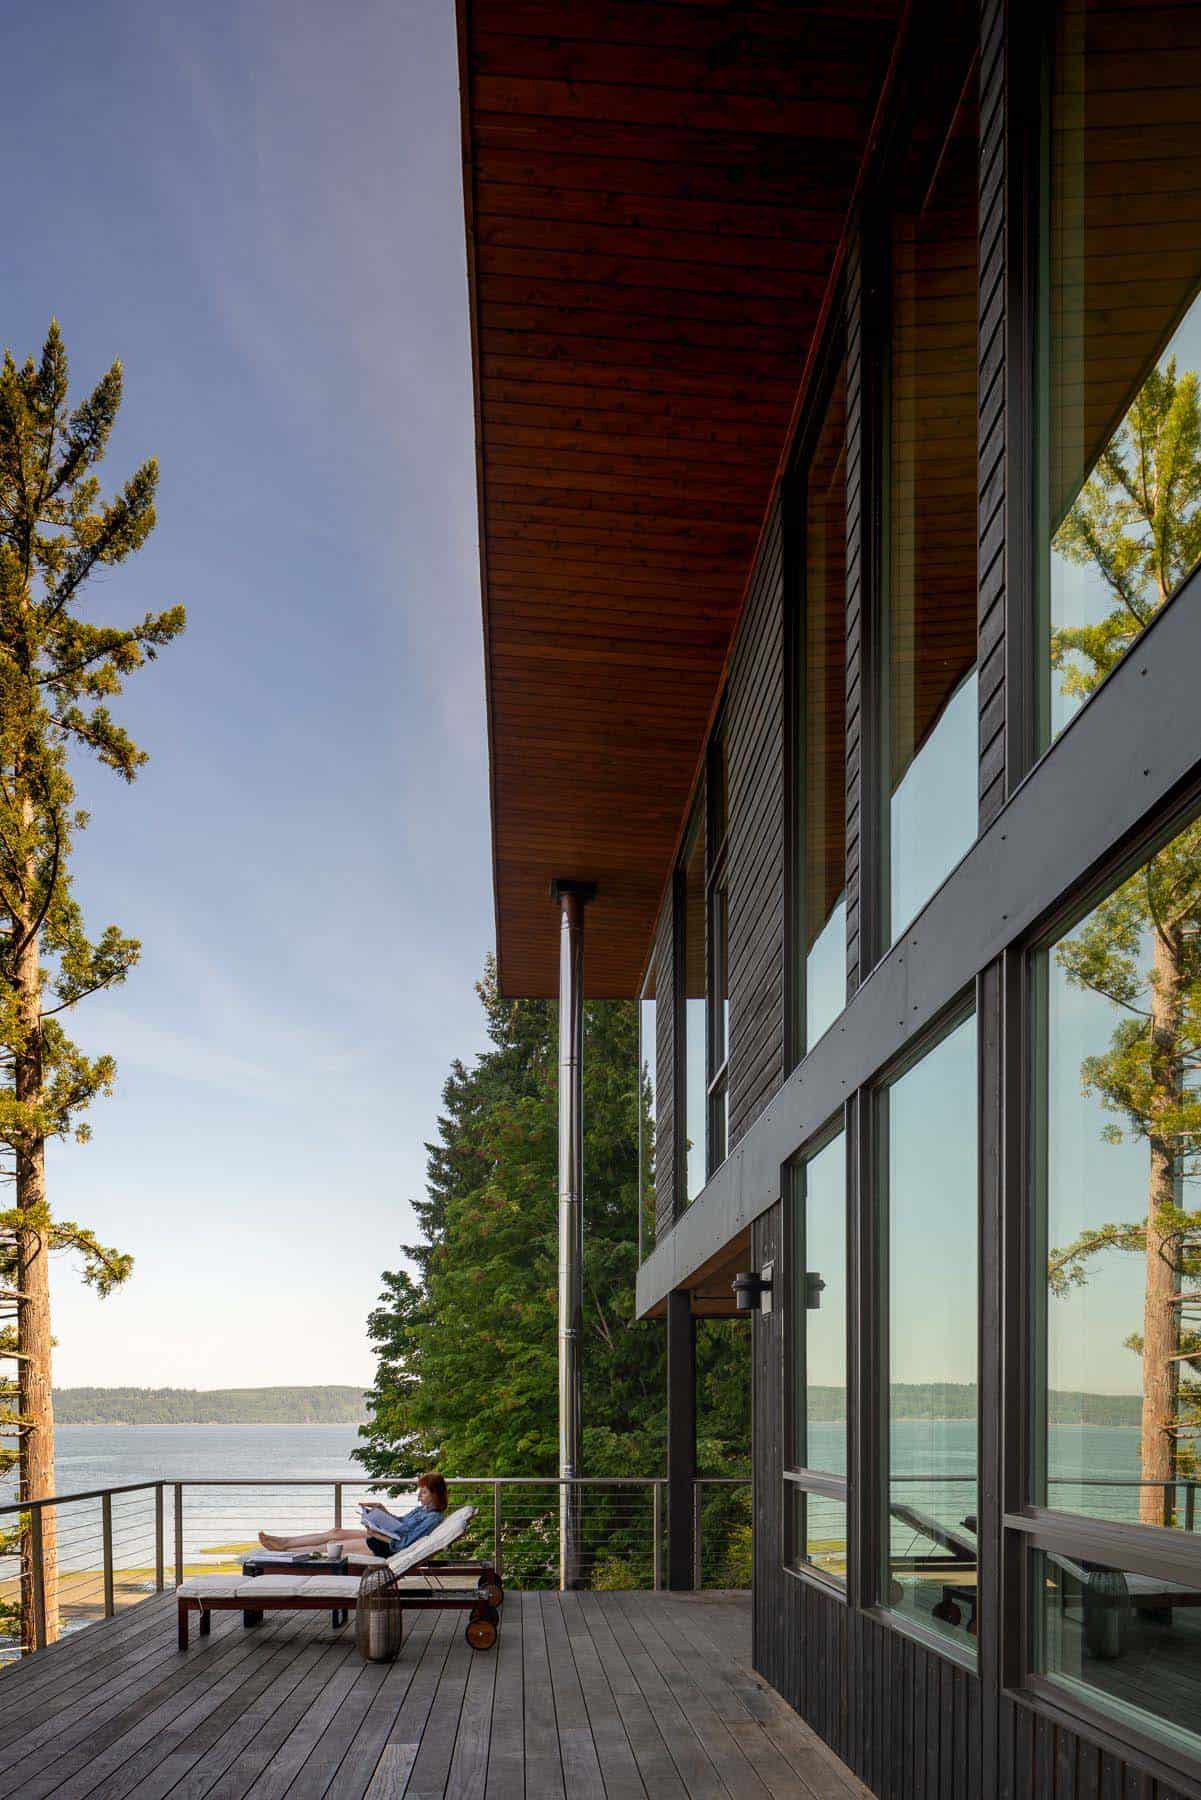 modern beach house exterior deck overlooking the water